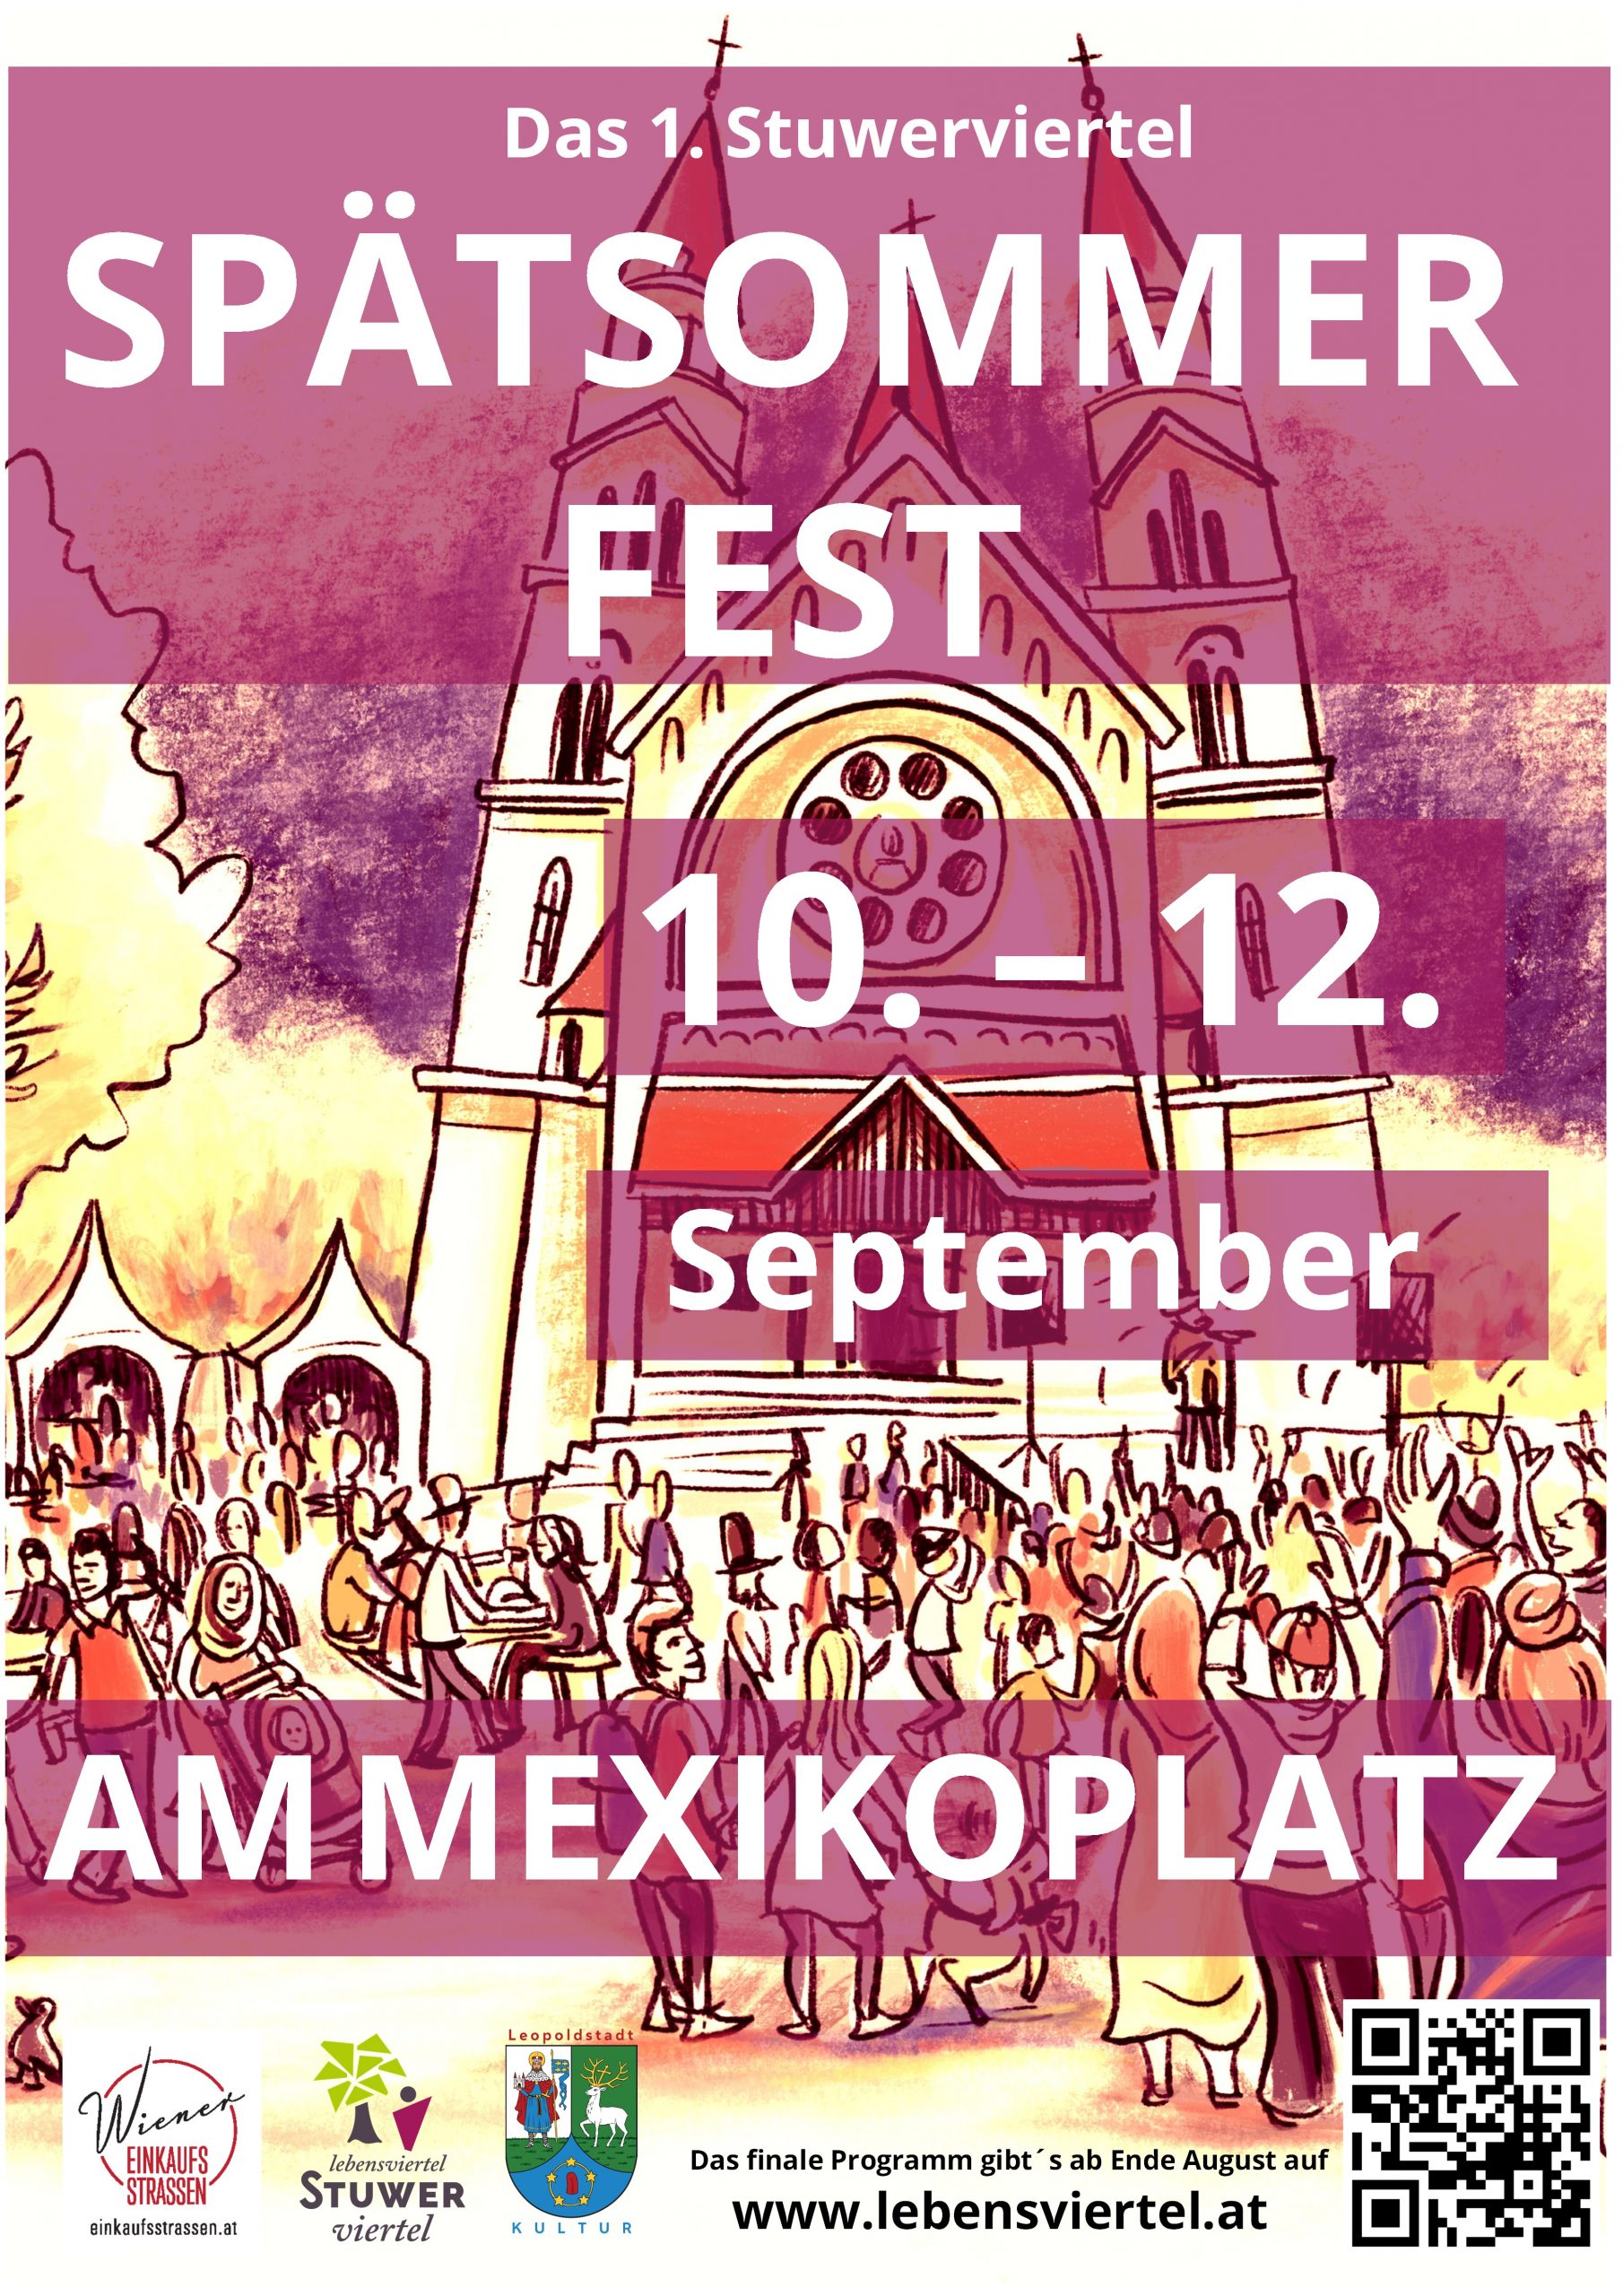 Spätsommerfest am Mexikoplatz im Stuwerviertel akak Lebensviertel